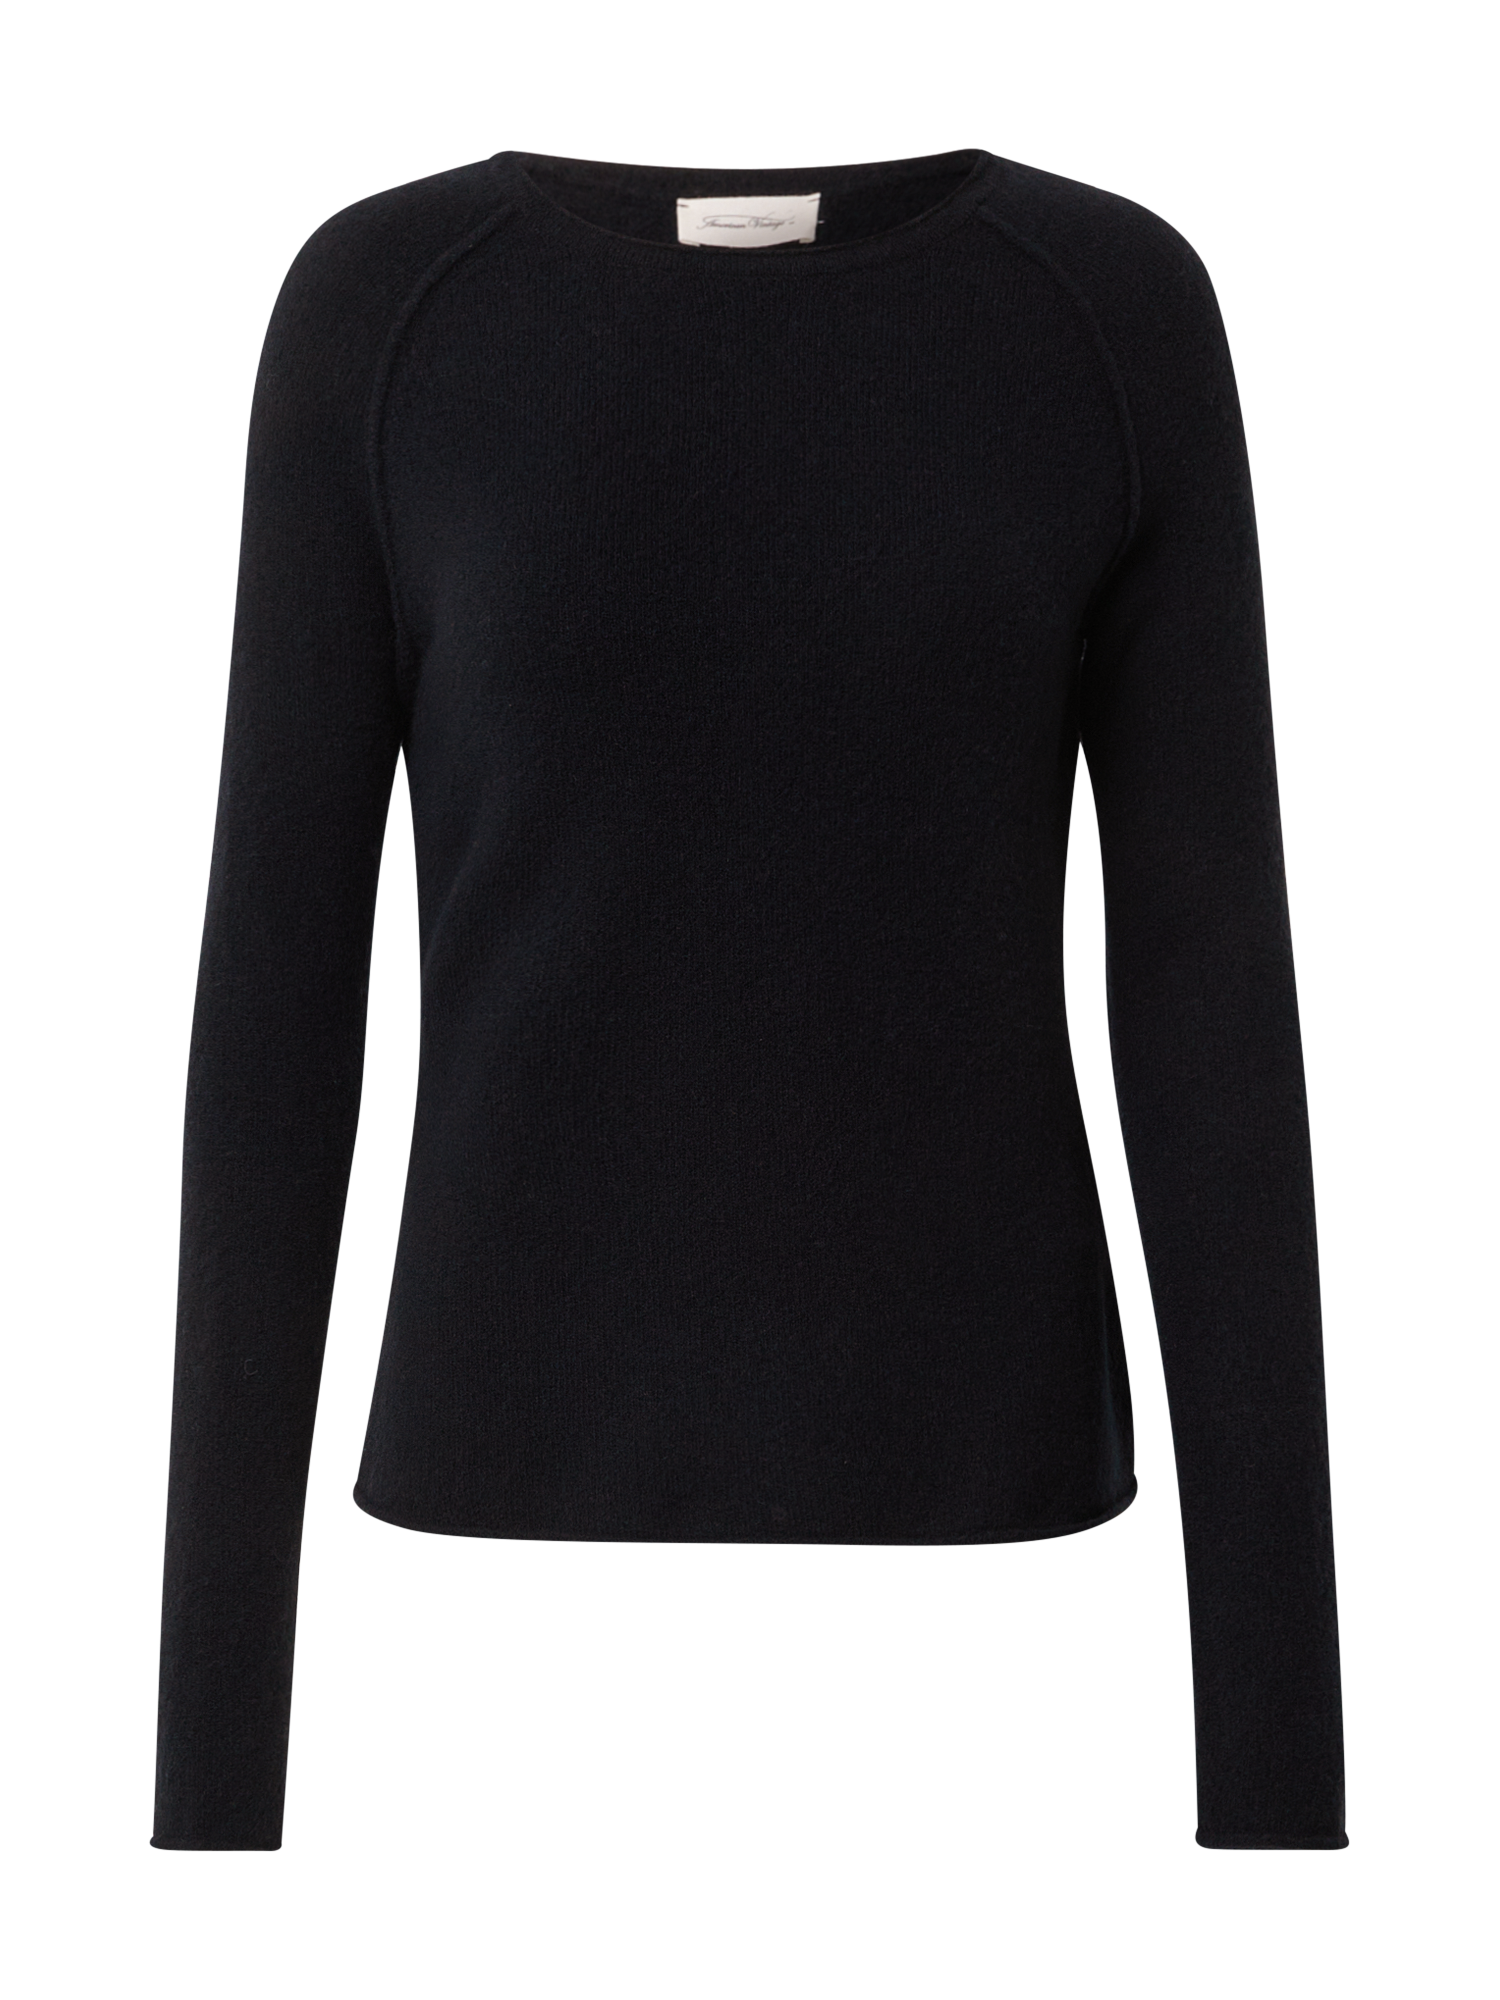 Odzież Swetry & dzianina AMERICAN VINTAGE Sweter DAM w kolorze Czarnym 